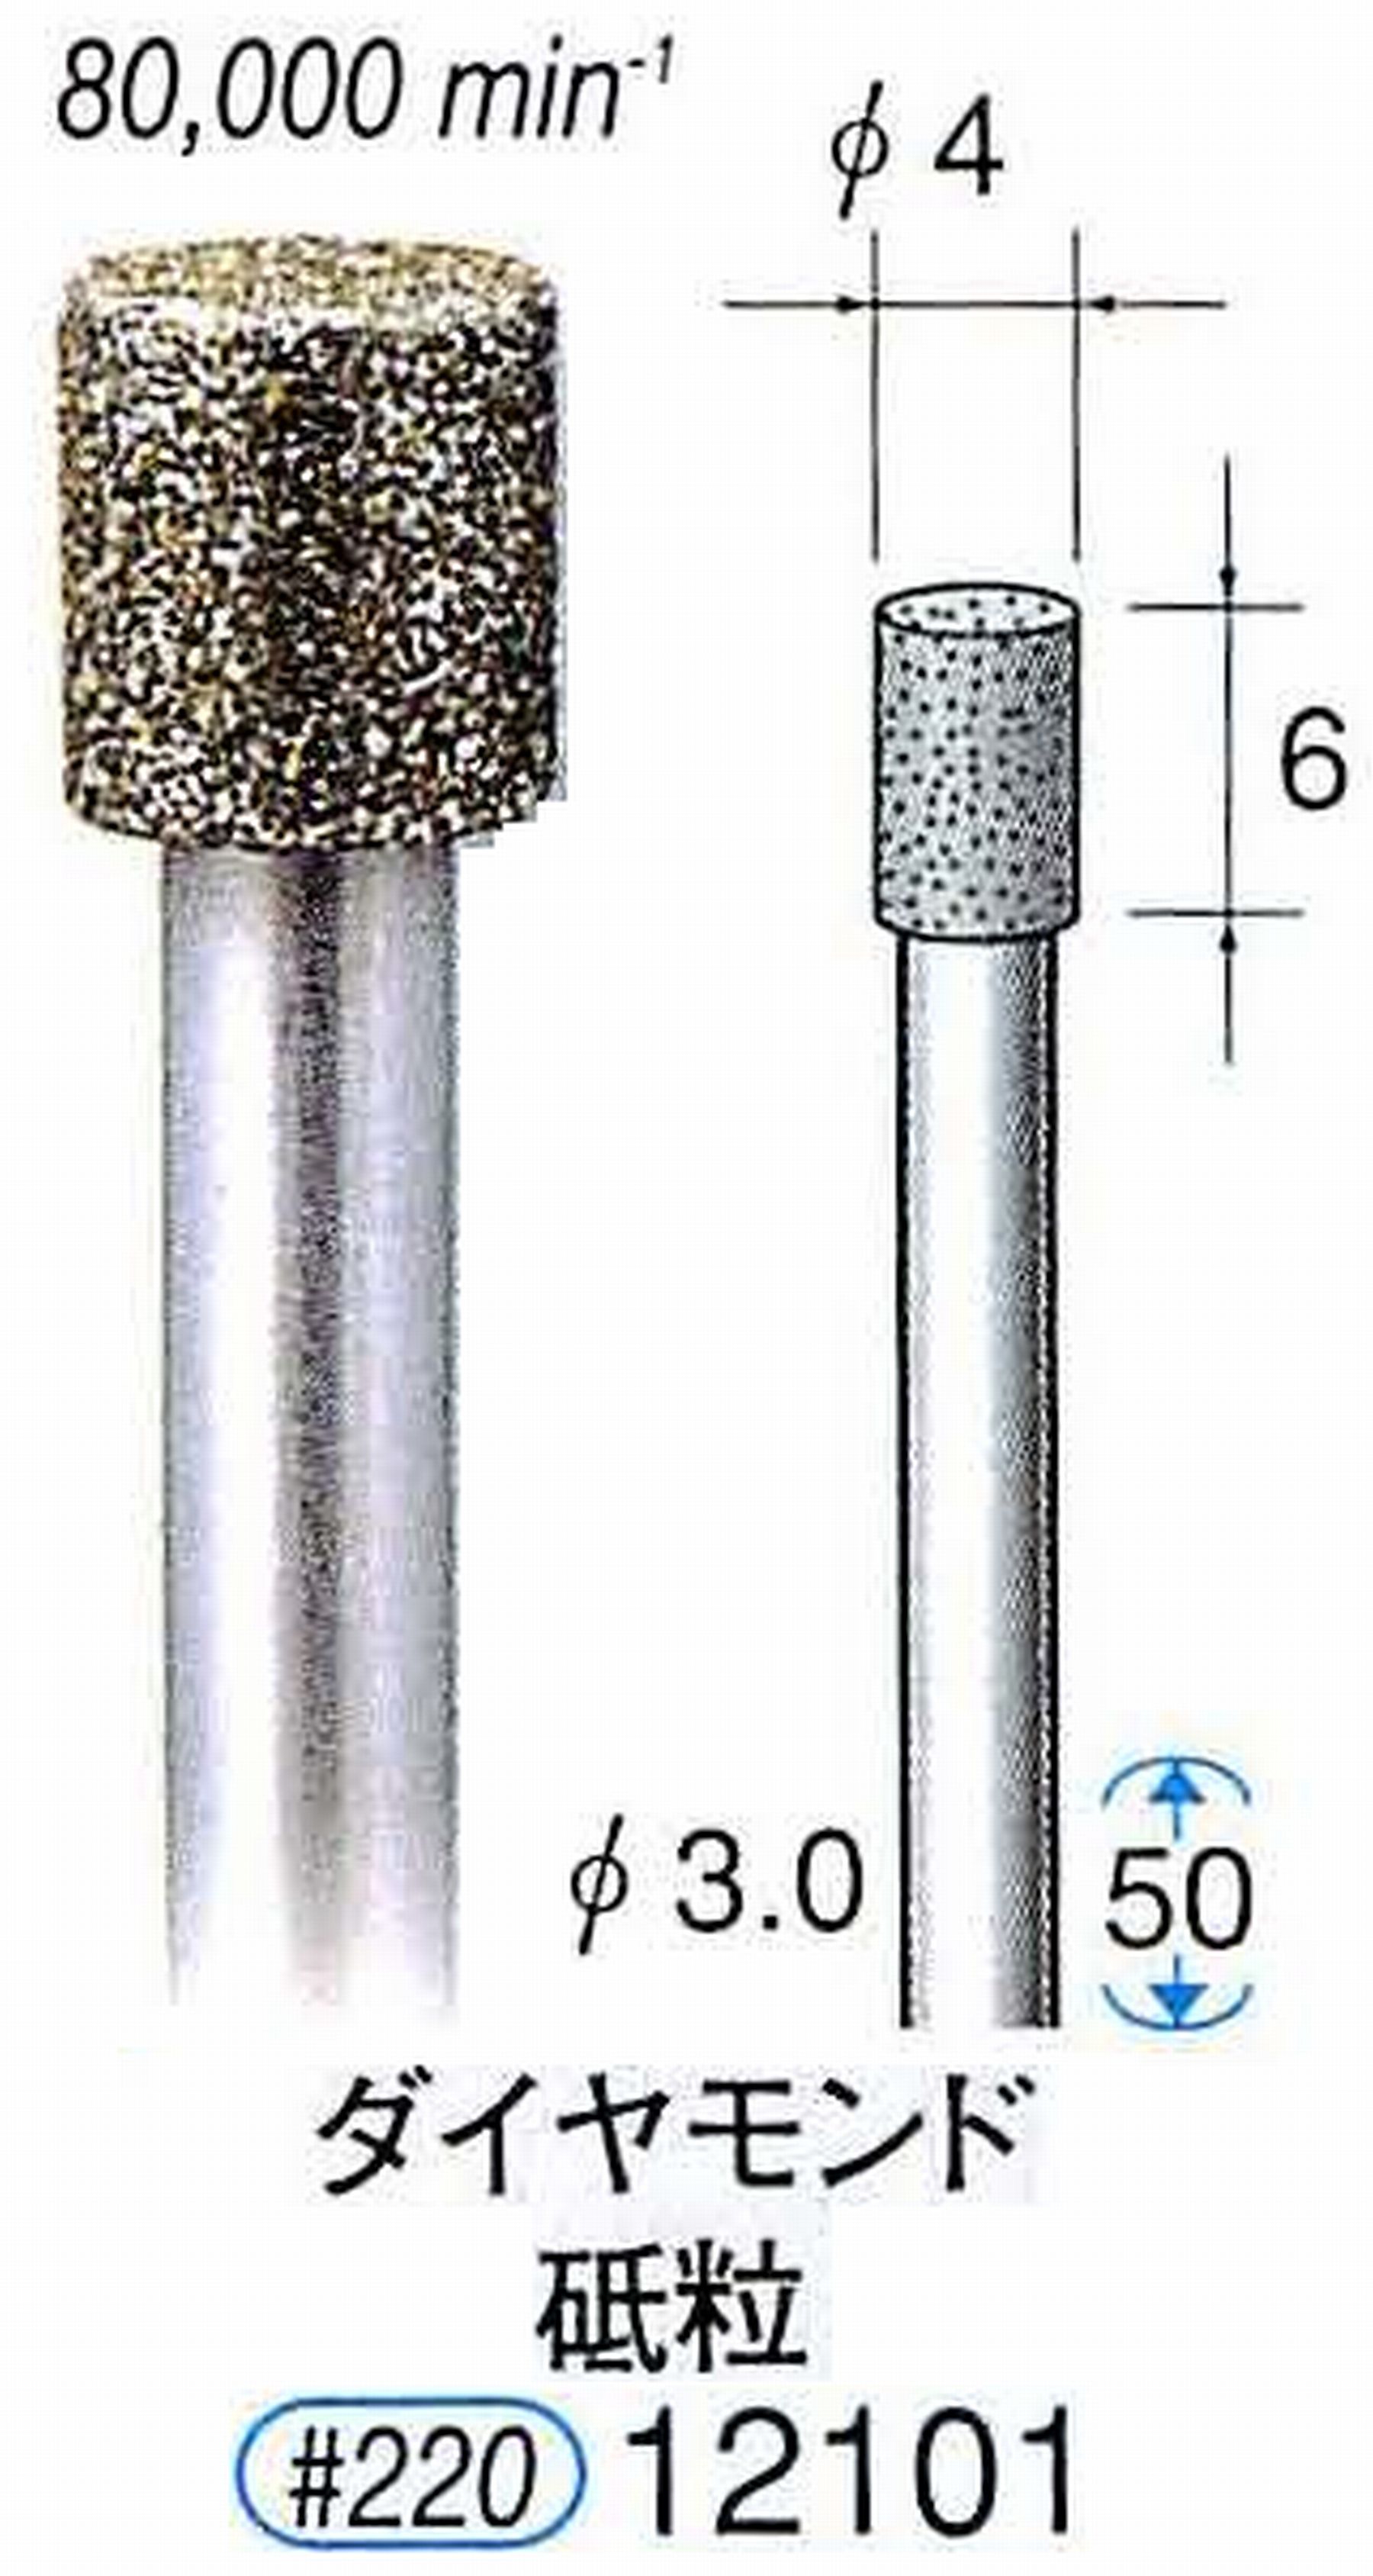 ナカニシ/NAKANISHI 電着ダイヤモンド ダイヤモンド砥粒 軸径(シャンク)φ3.0mm 12101